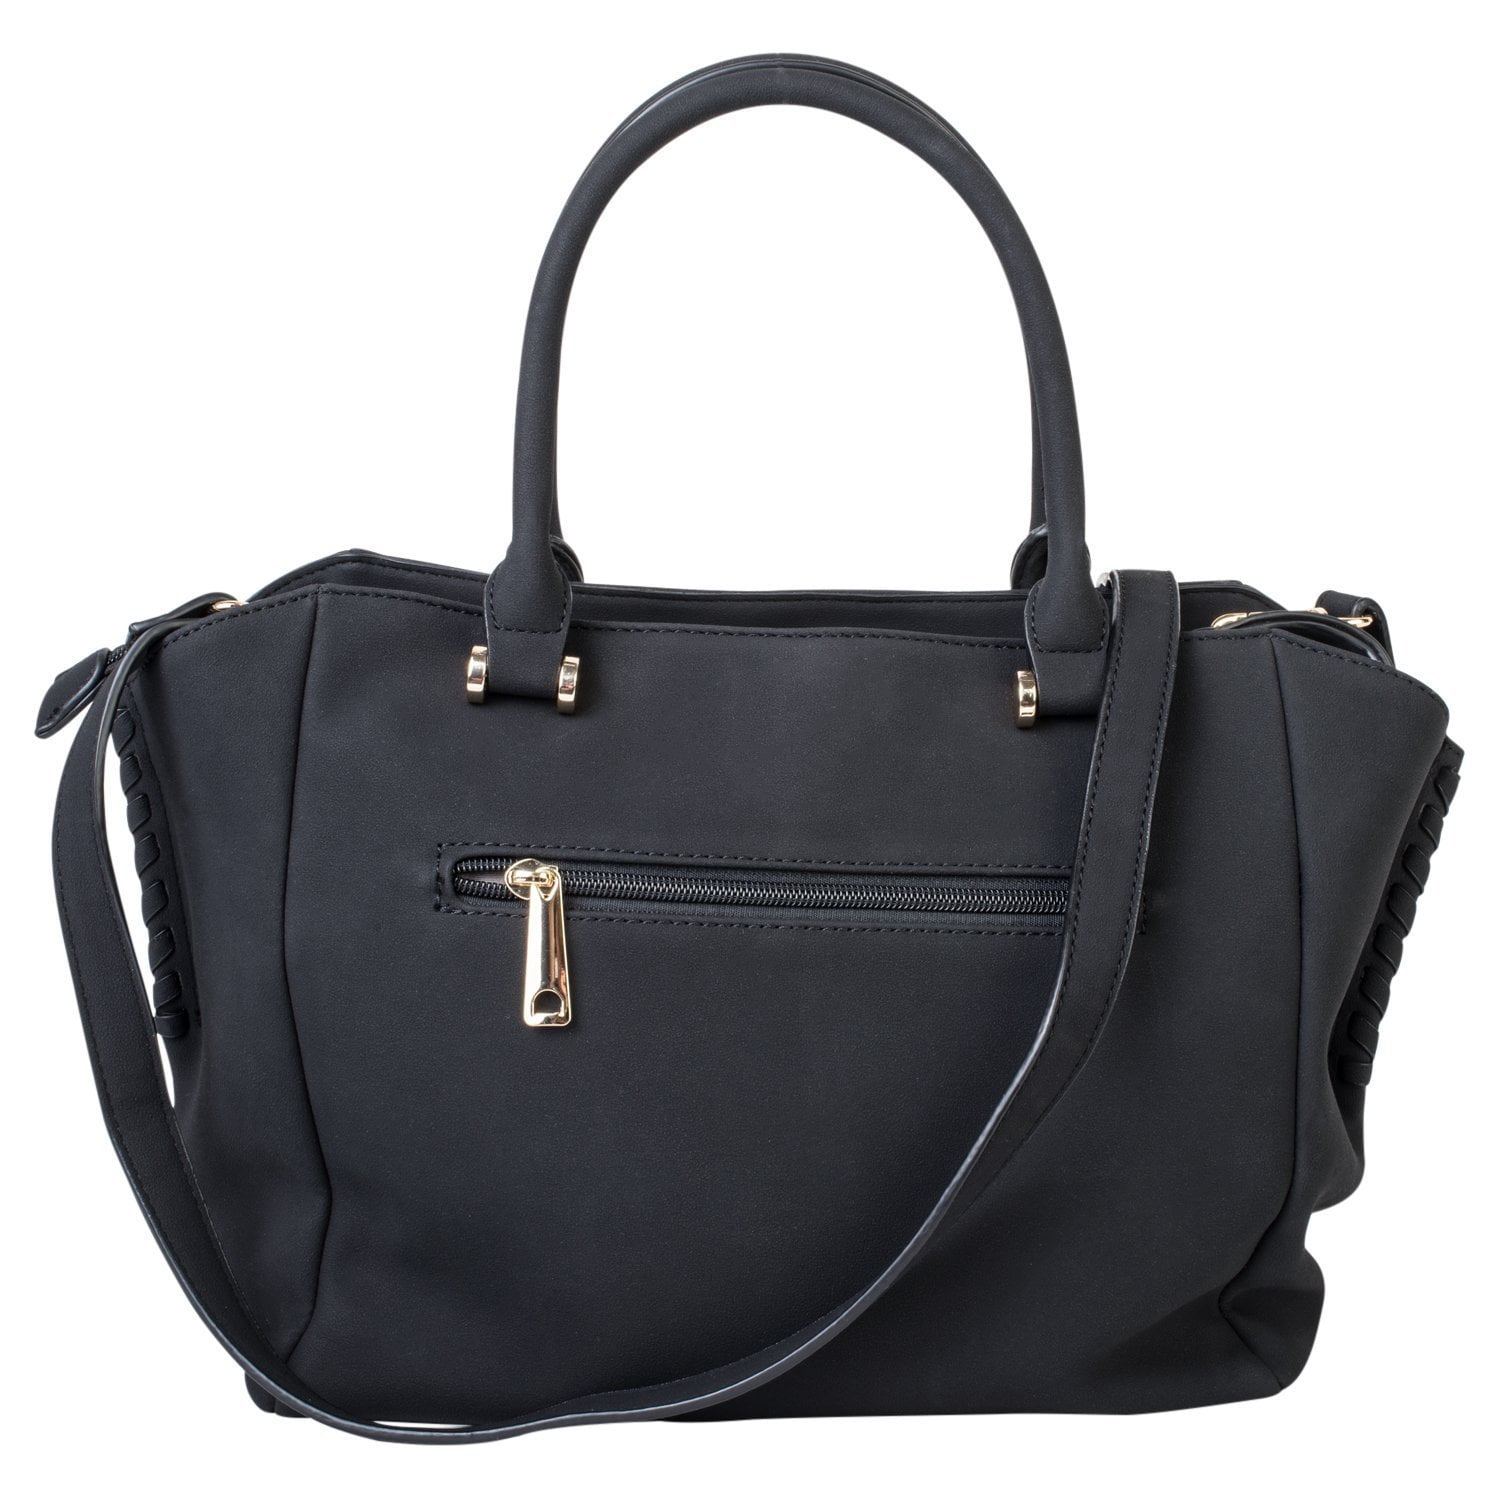 Handbag Shoulder Bag Satchel PU Leather with Adjustable Crossbody Strap ...